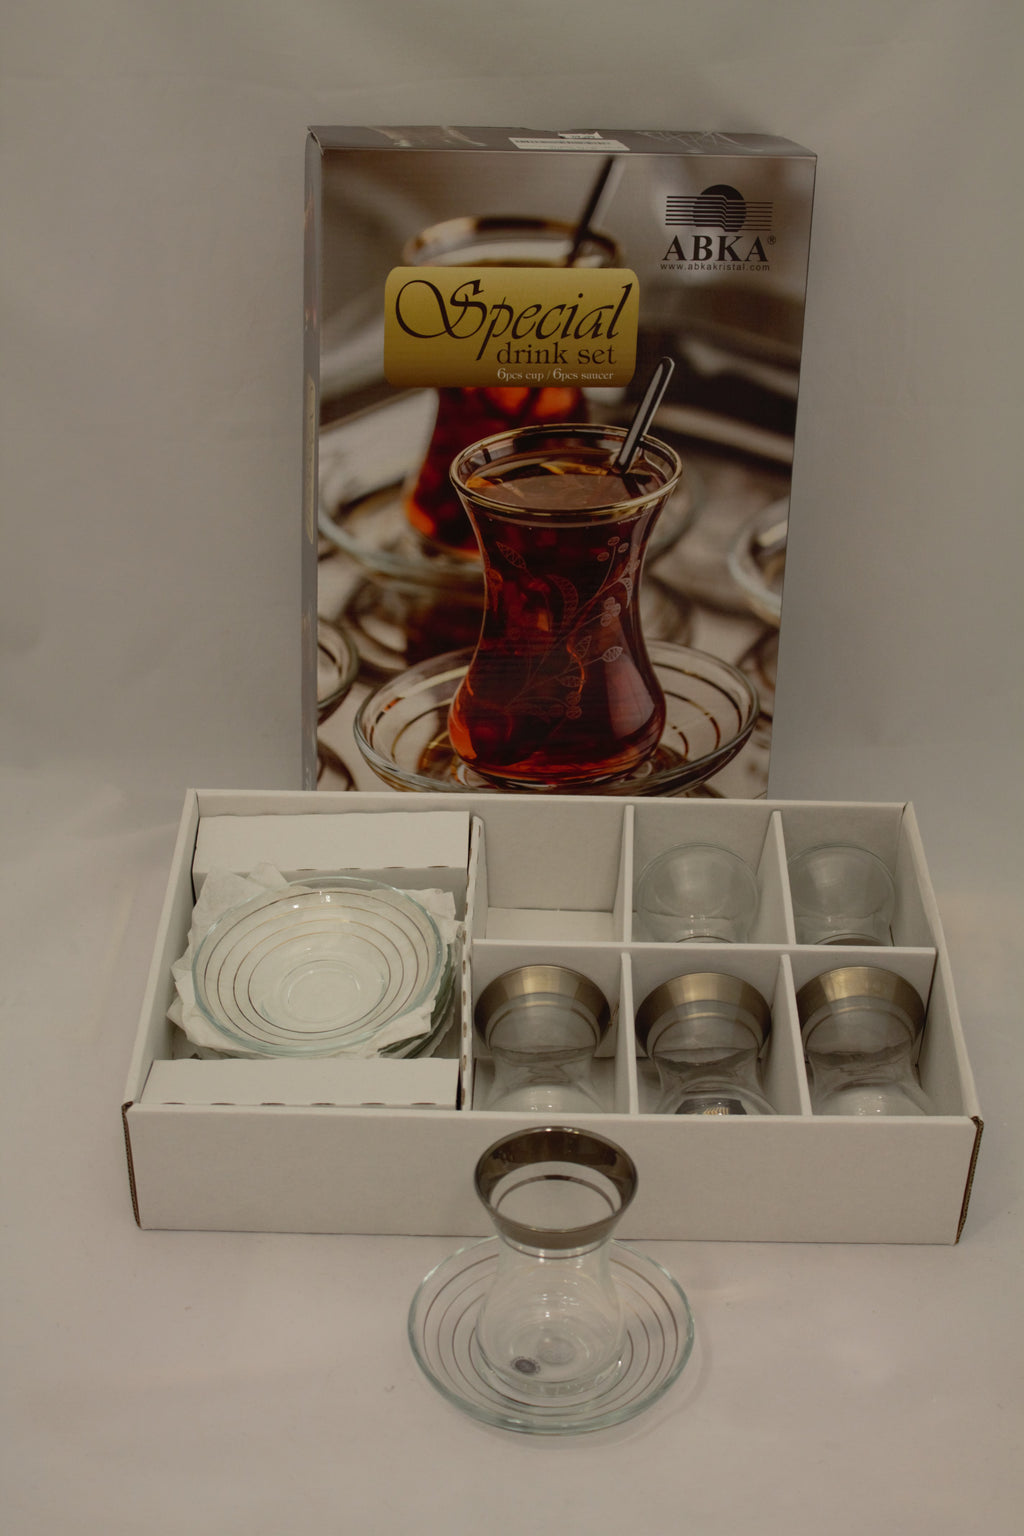 Abka Tea Set, Tea Set, Glass Set, Drink Set, Turkish Tea Set, Handcrafted